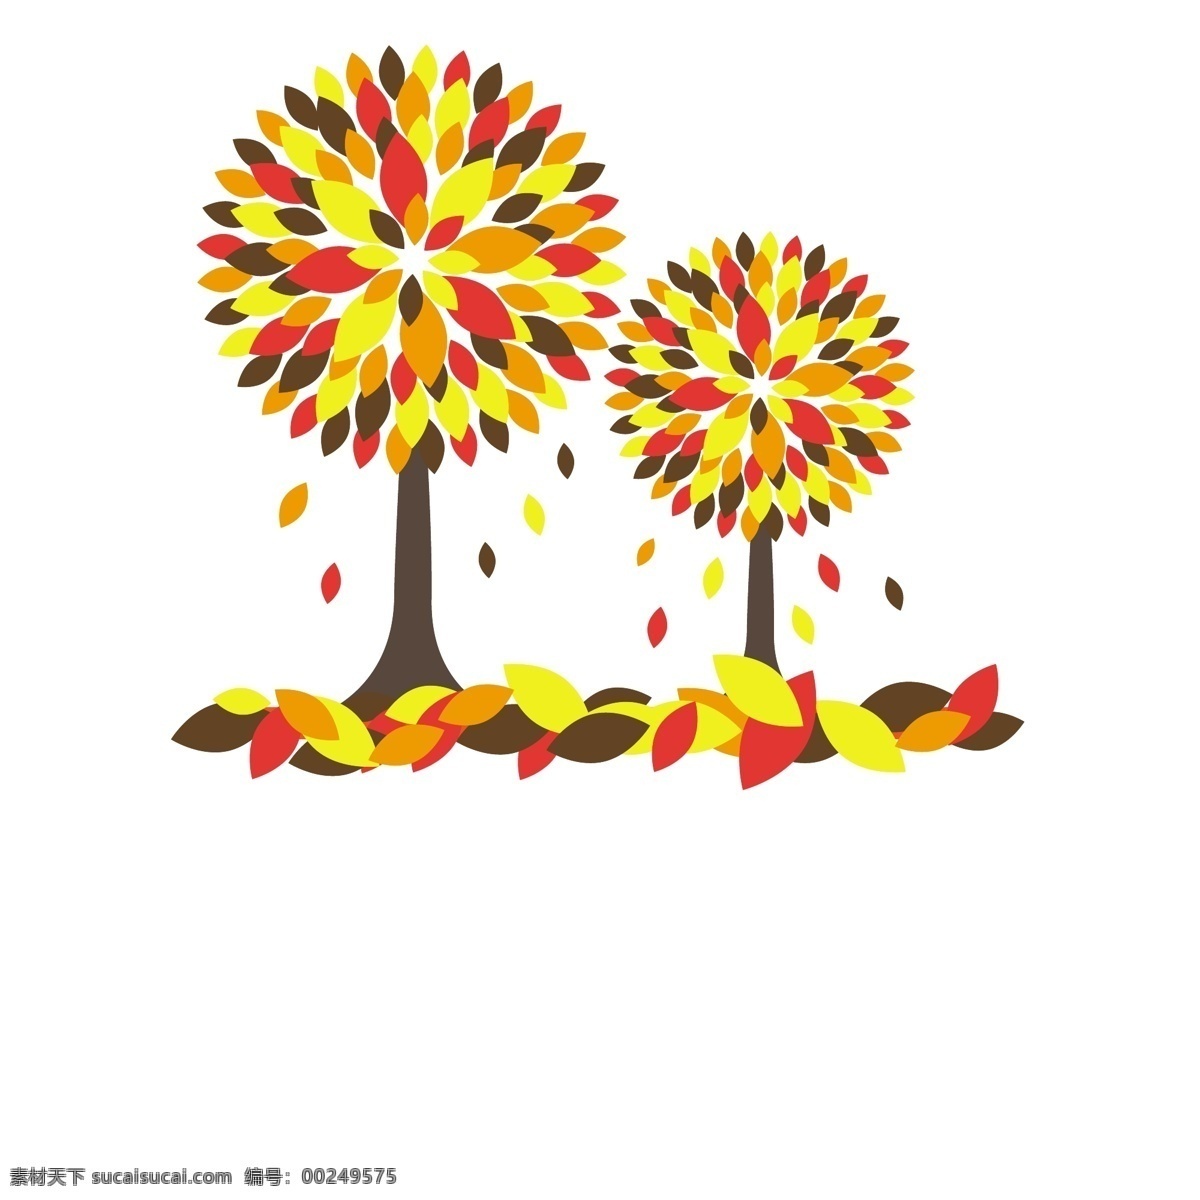 彩色 时尚 抽 大树 插画 趣味 叶子 抽像 艺术